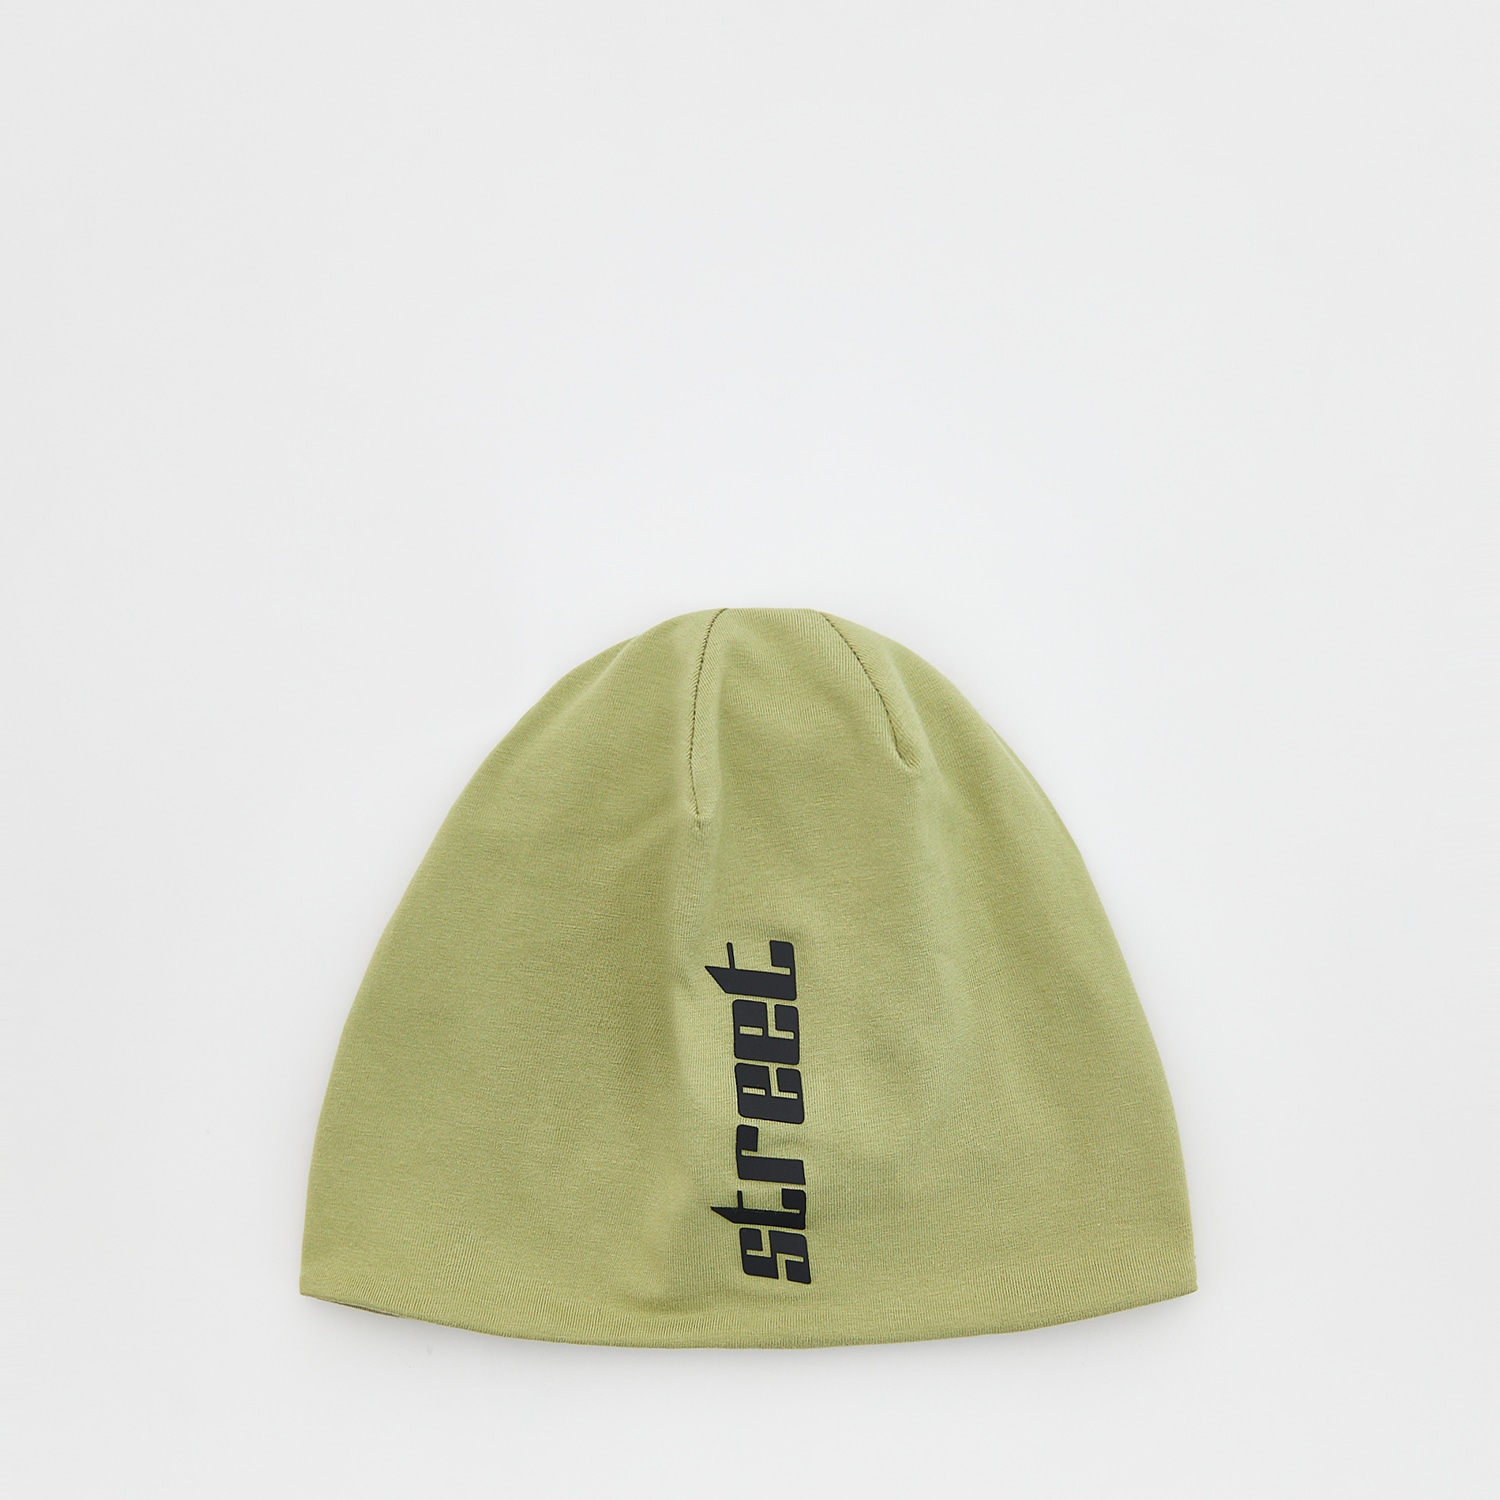 Reserved - Bawełniana czapka z napisem - Khaki